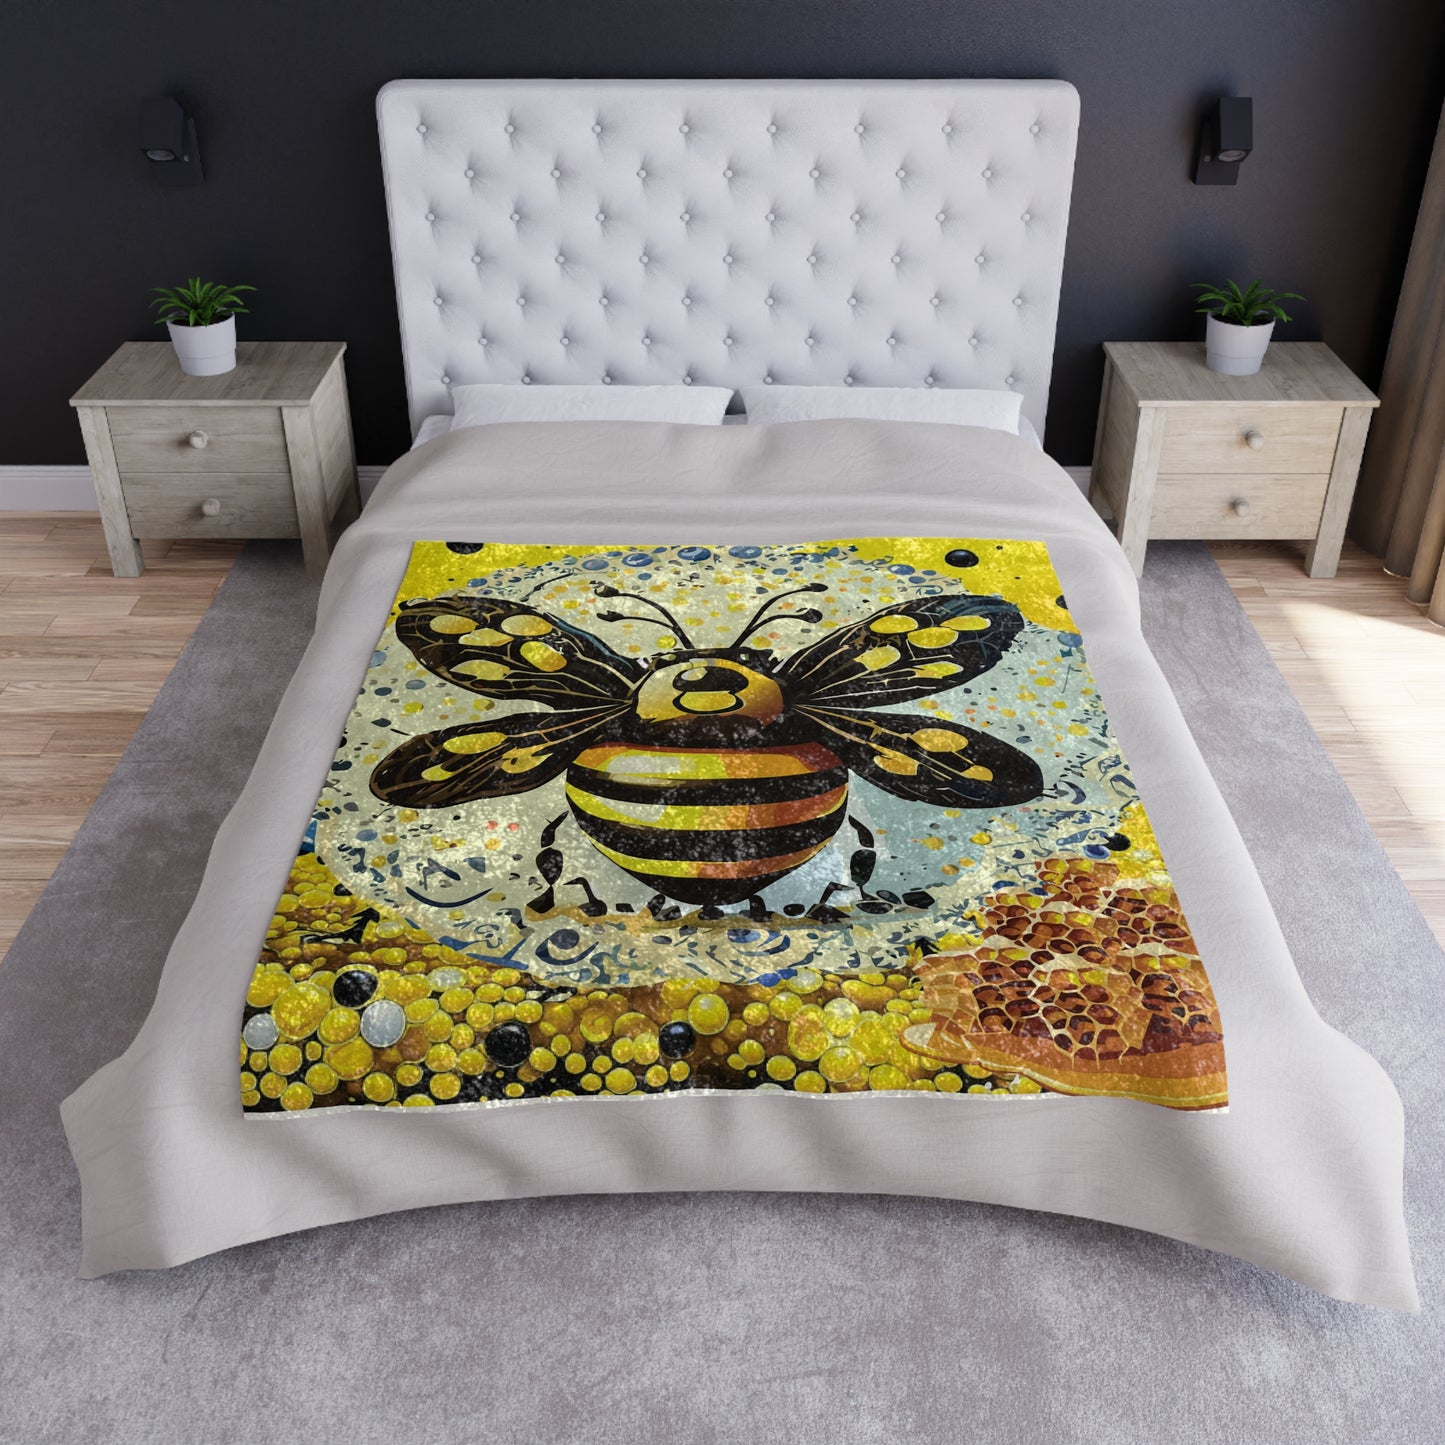 Crushed Velvet Blanket - Juicy-Bee